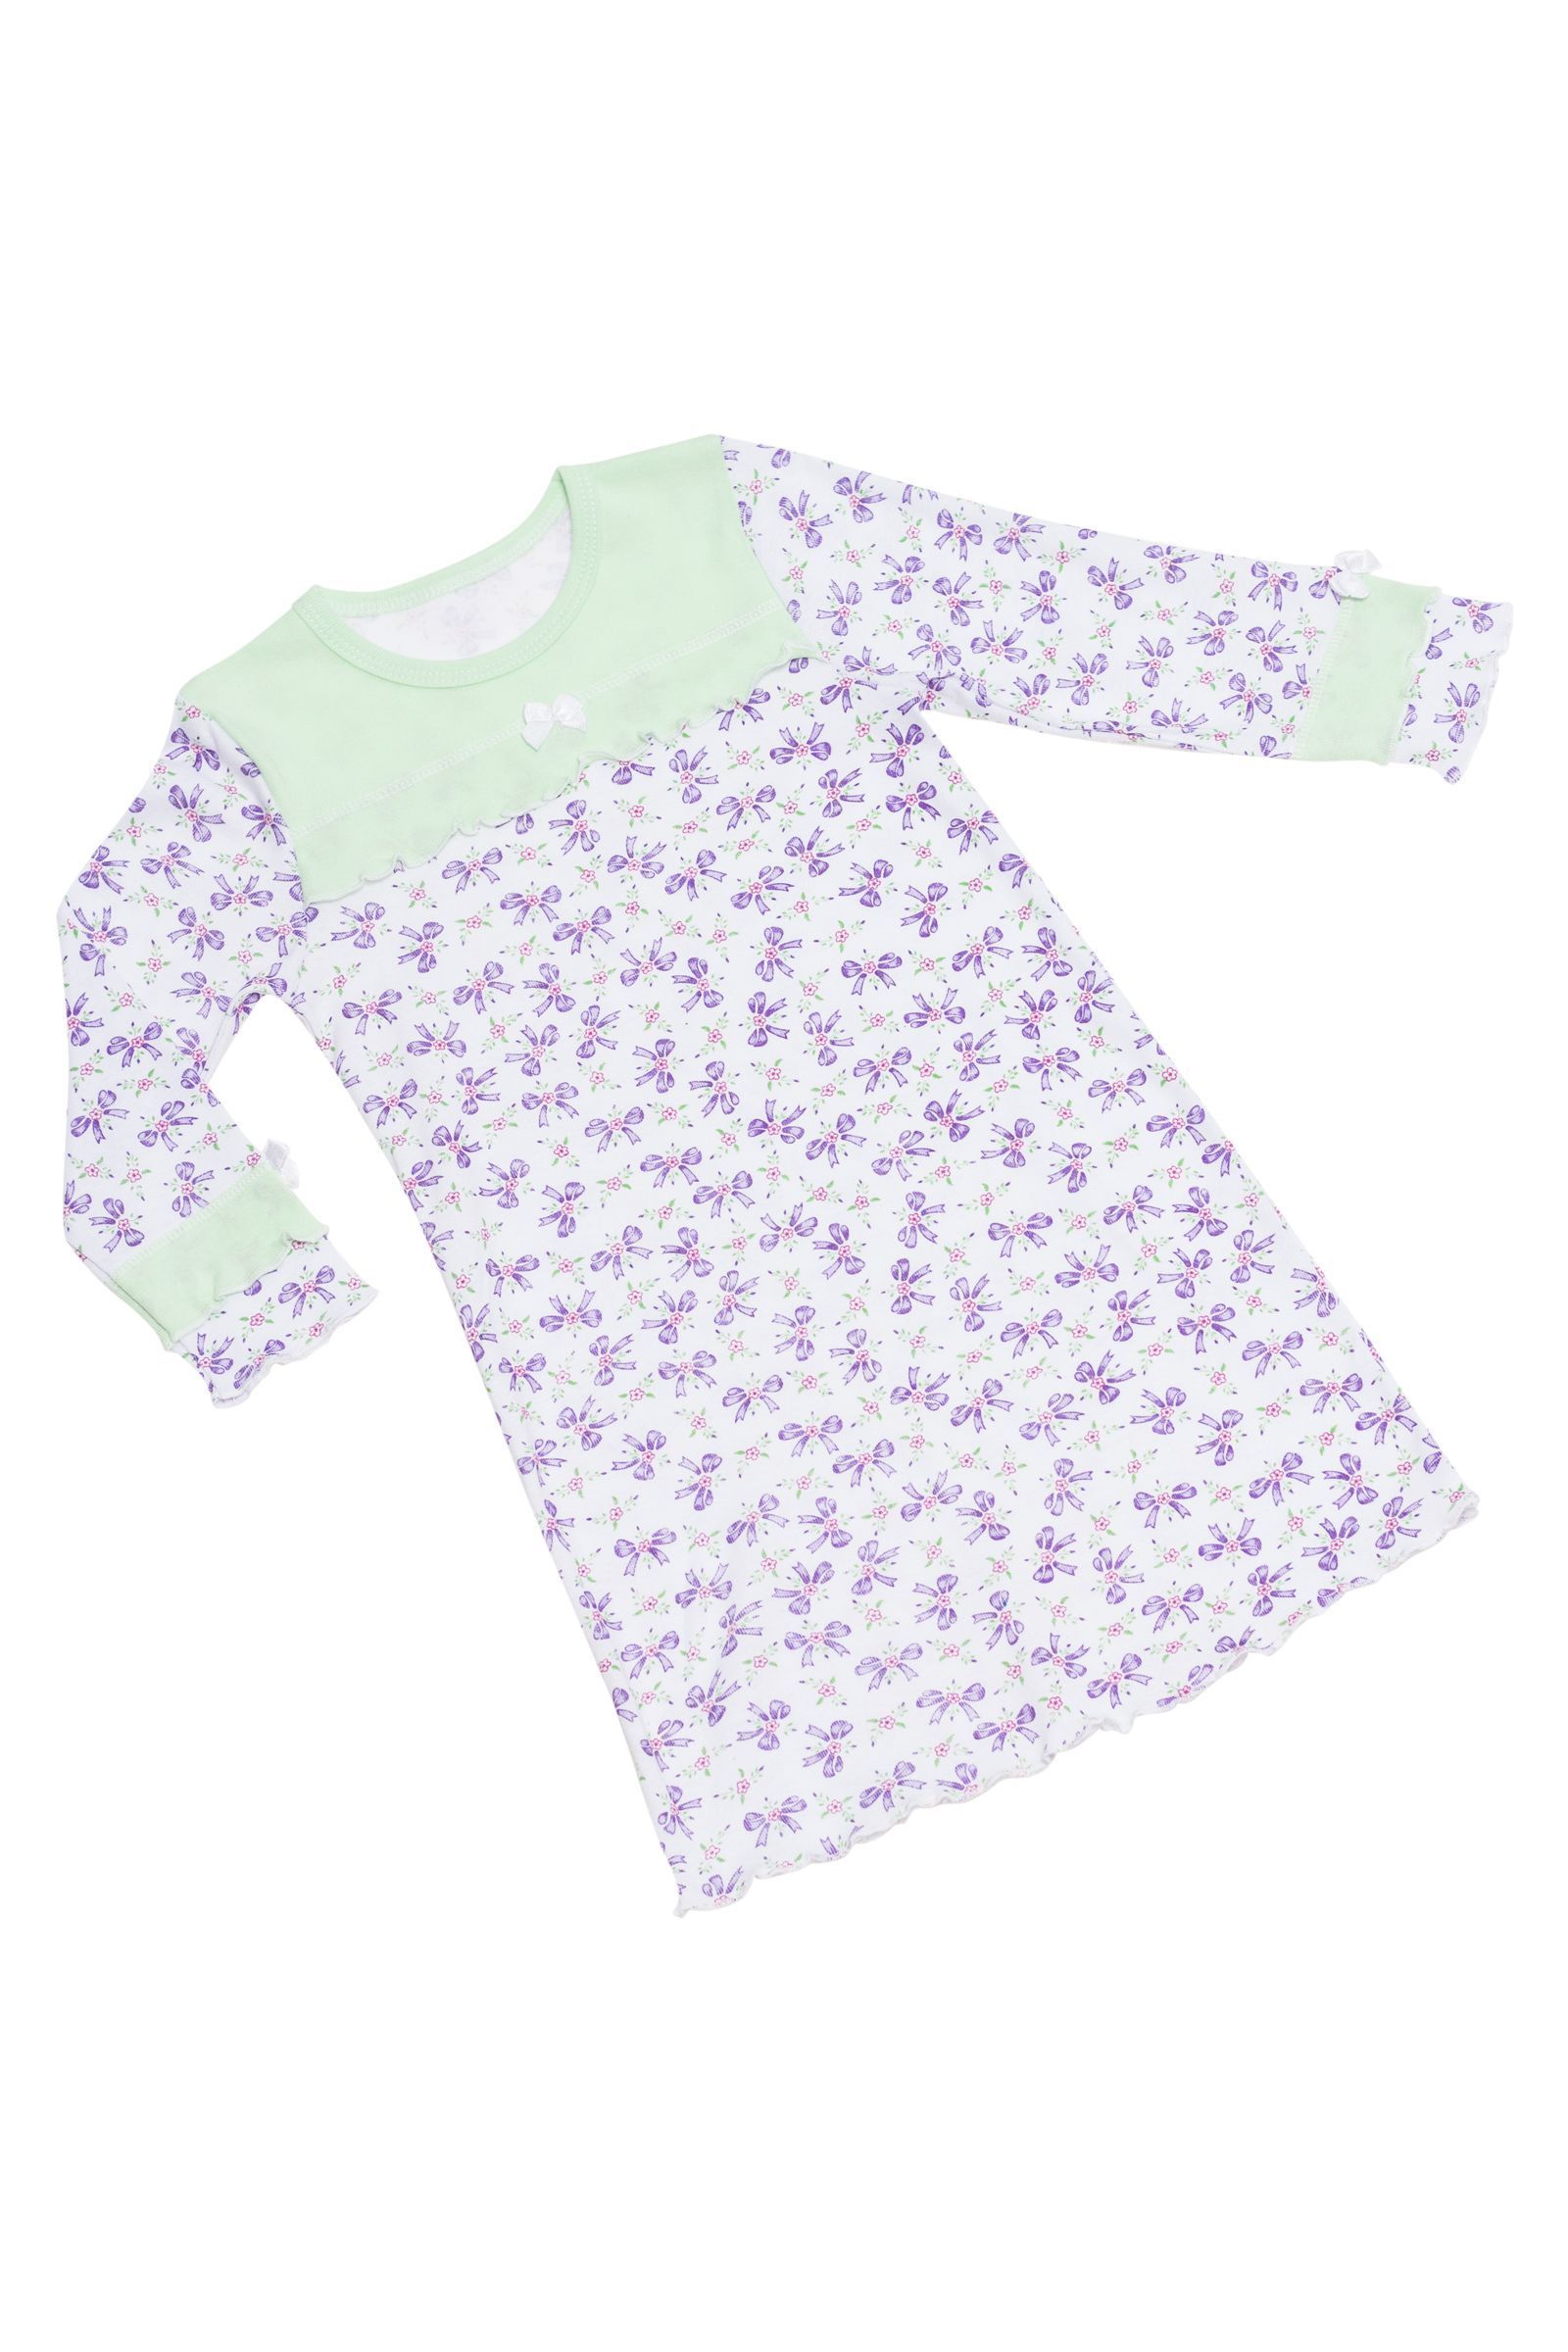 Ночная сорочка-СР03-727 оптом от производителя детской одежды 'Алёна'